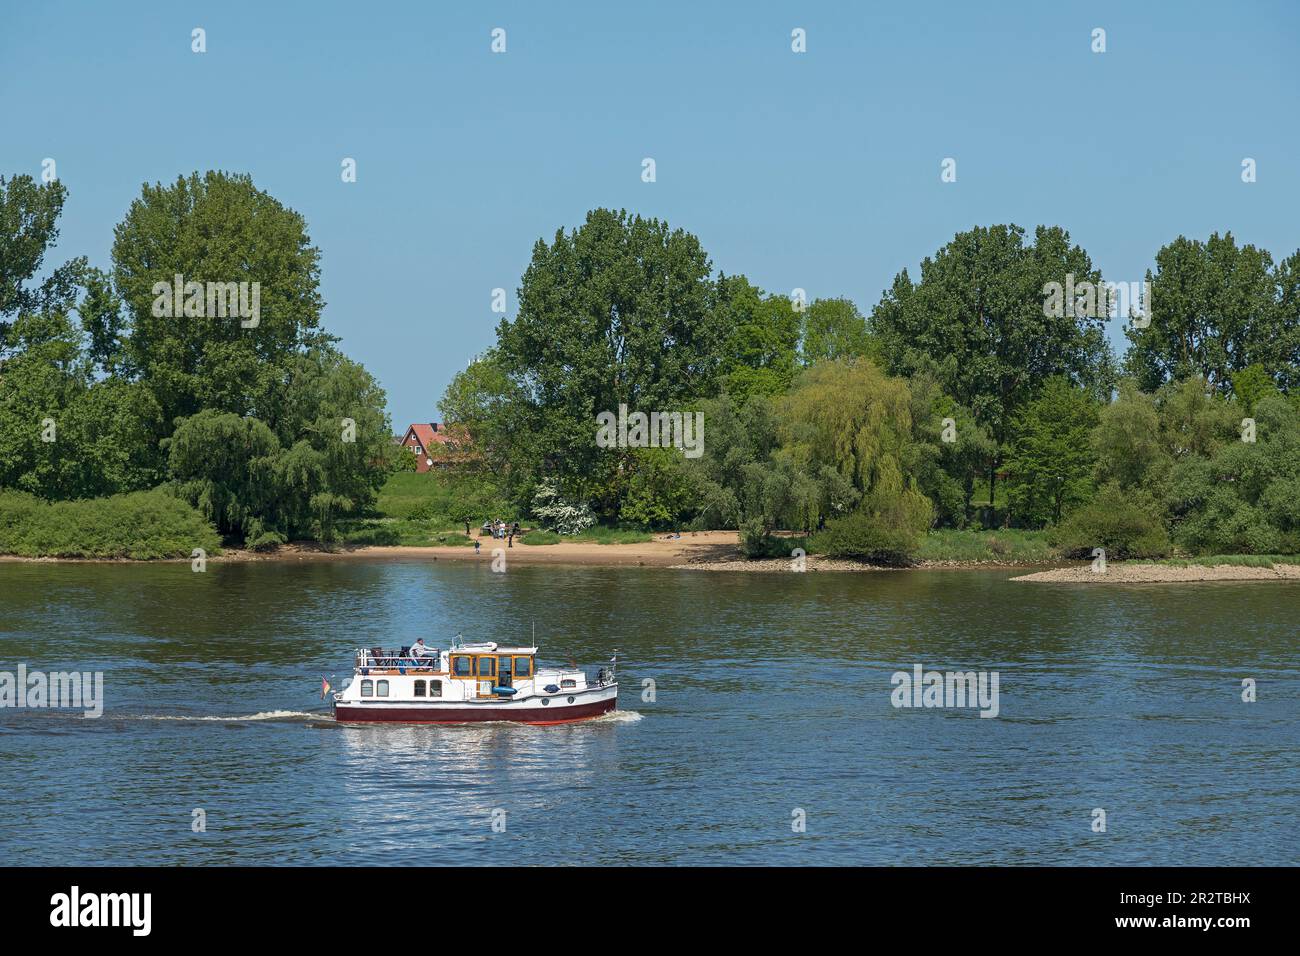 Bateau, Rivière Elbe, Hoopte, Winsen (Luhe), Basse-Saxe, De l'autre côté de la rivière se trouve Zollenspieker, Hambourg, Allemagne Banque D'Images